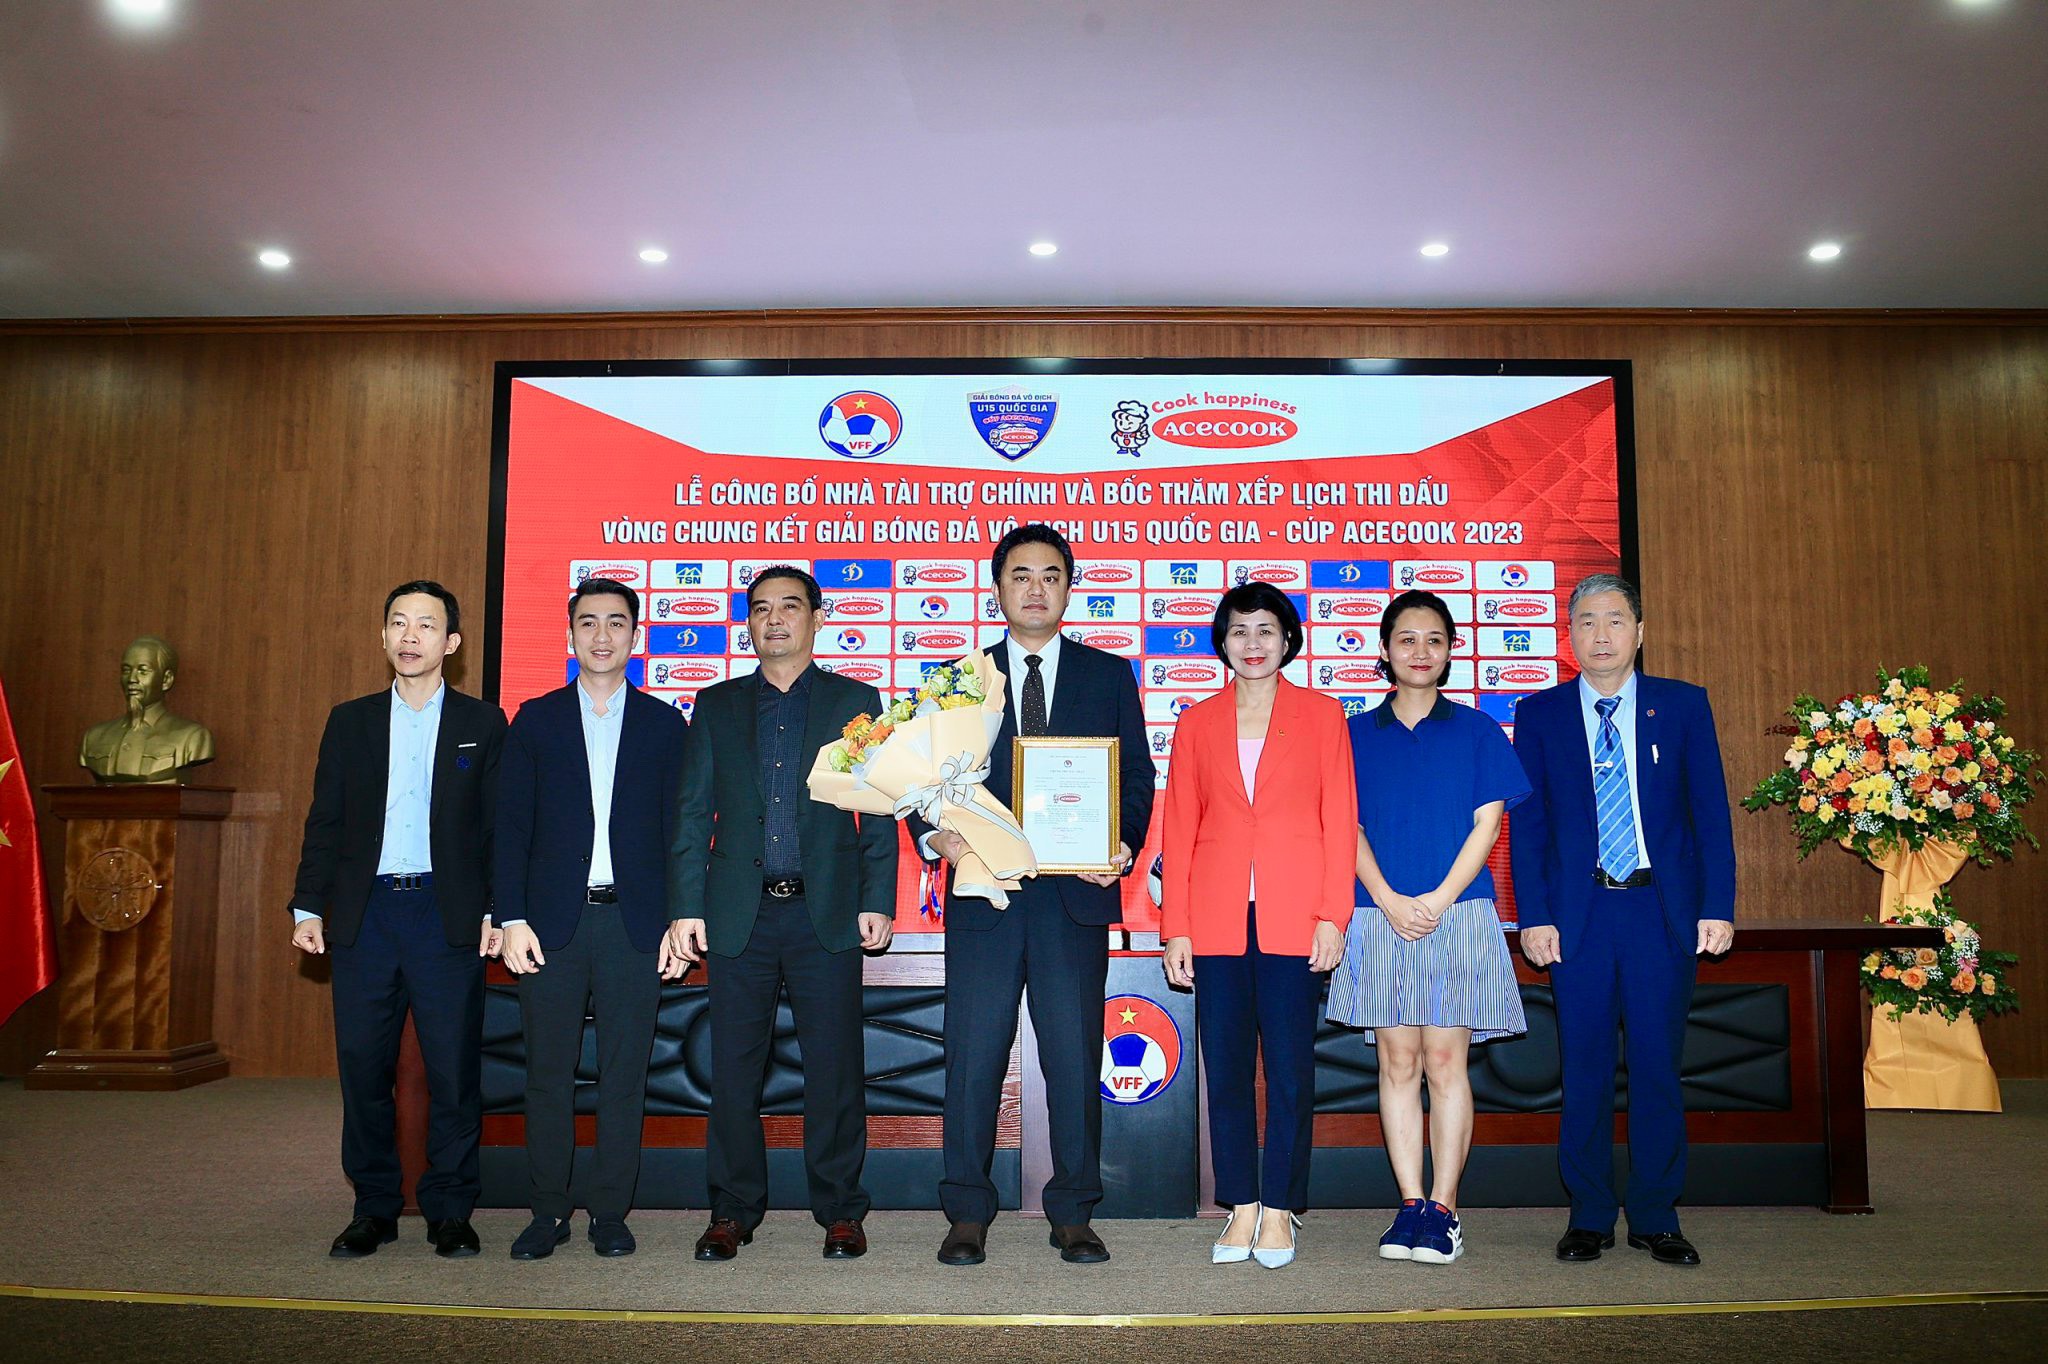 Giải U15 Quốc gia 2023 nhận được sự đồng hành của nhà tài trợ Acecook Việt Nam - Ảnh: Đức Cường